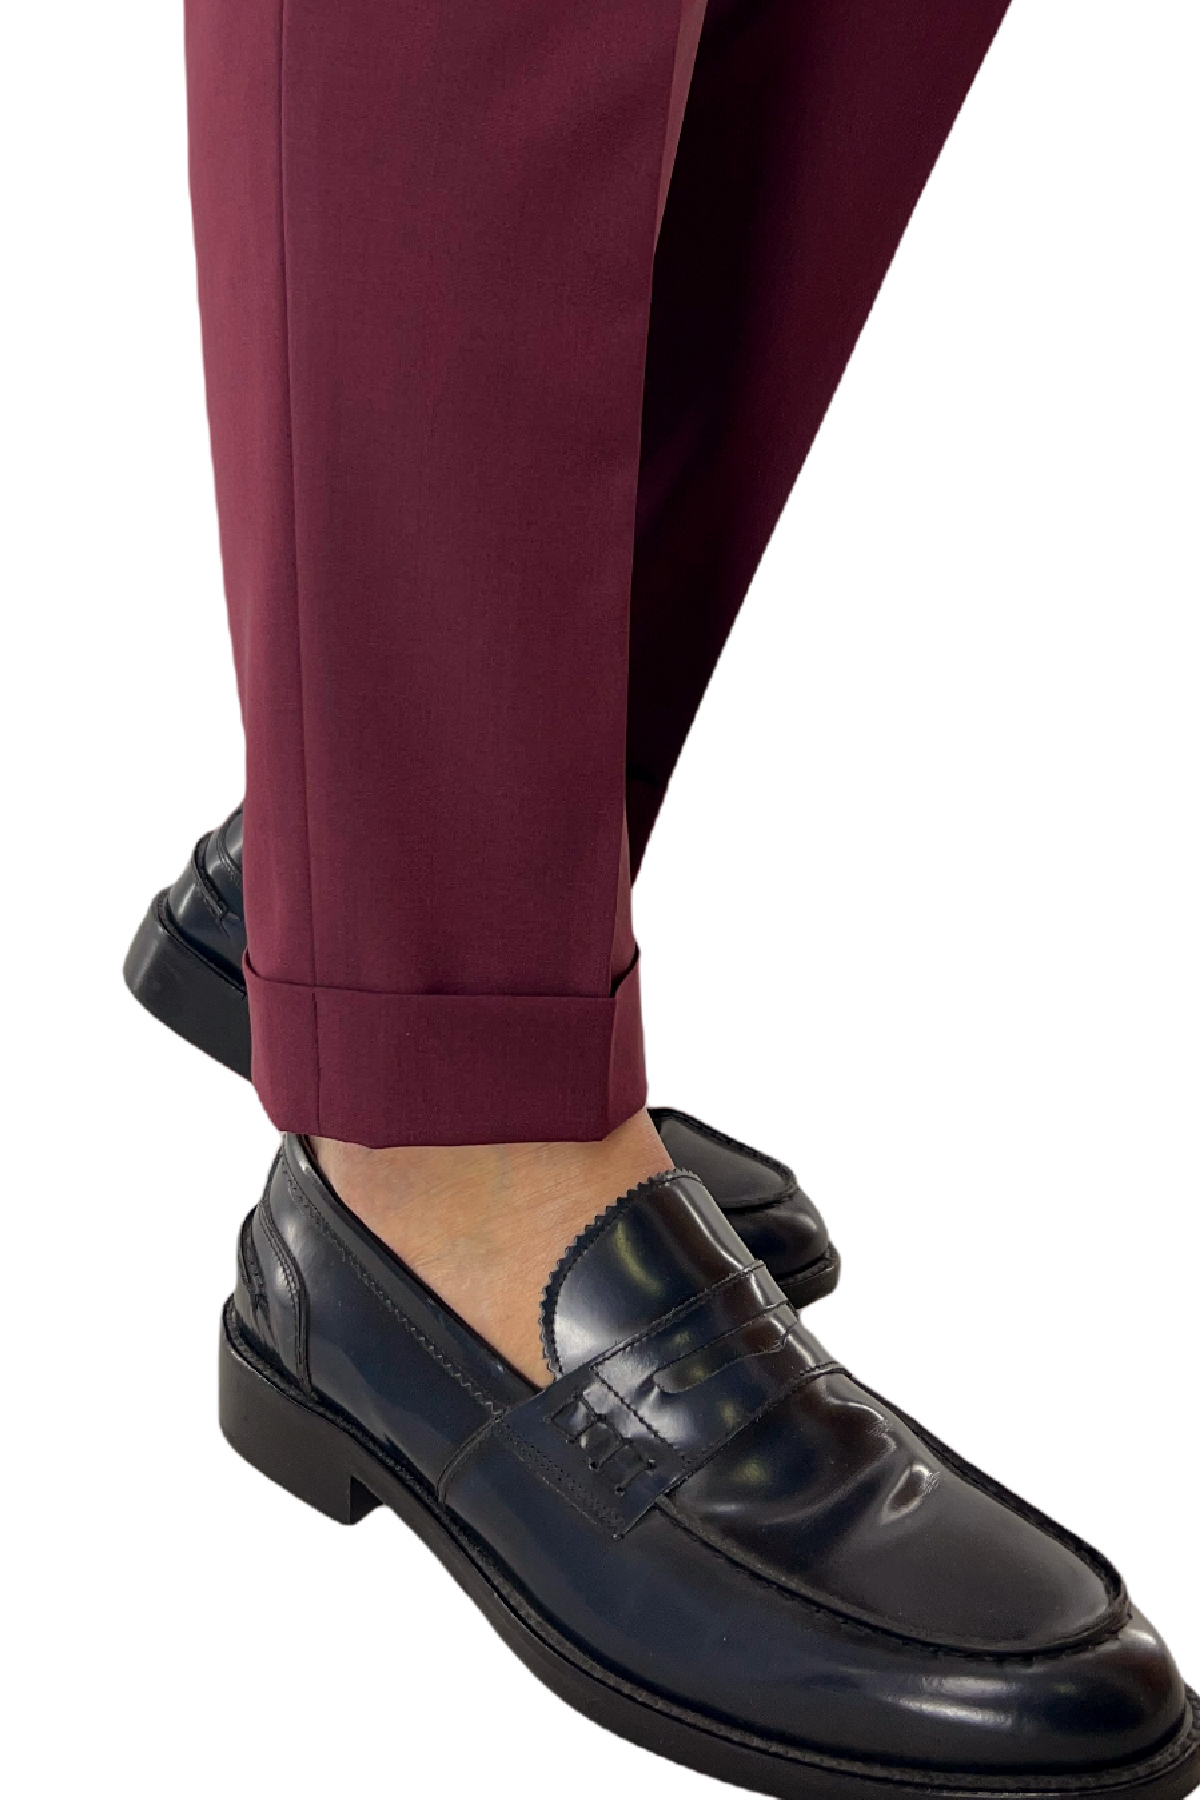 Pantalone uomo bordeaux fresco lana Vitale Barberis vita alta con pinces fibbie laterali e risvolto 4cm